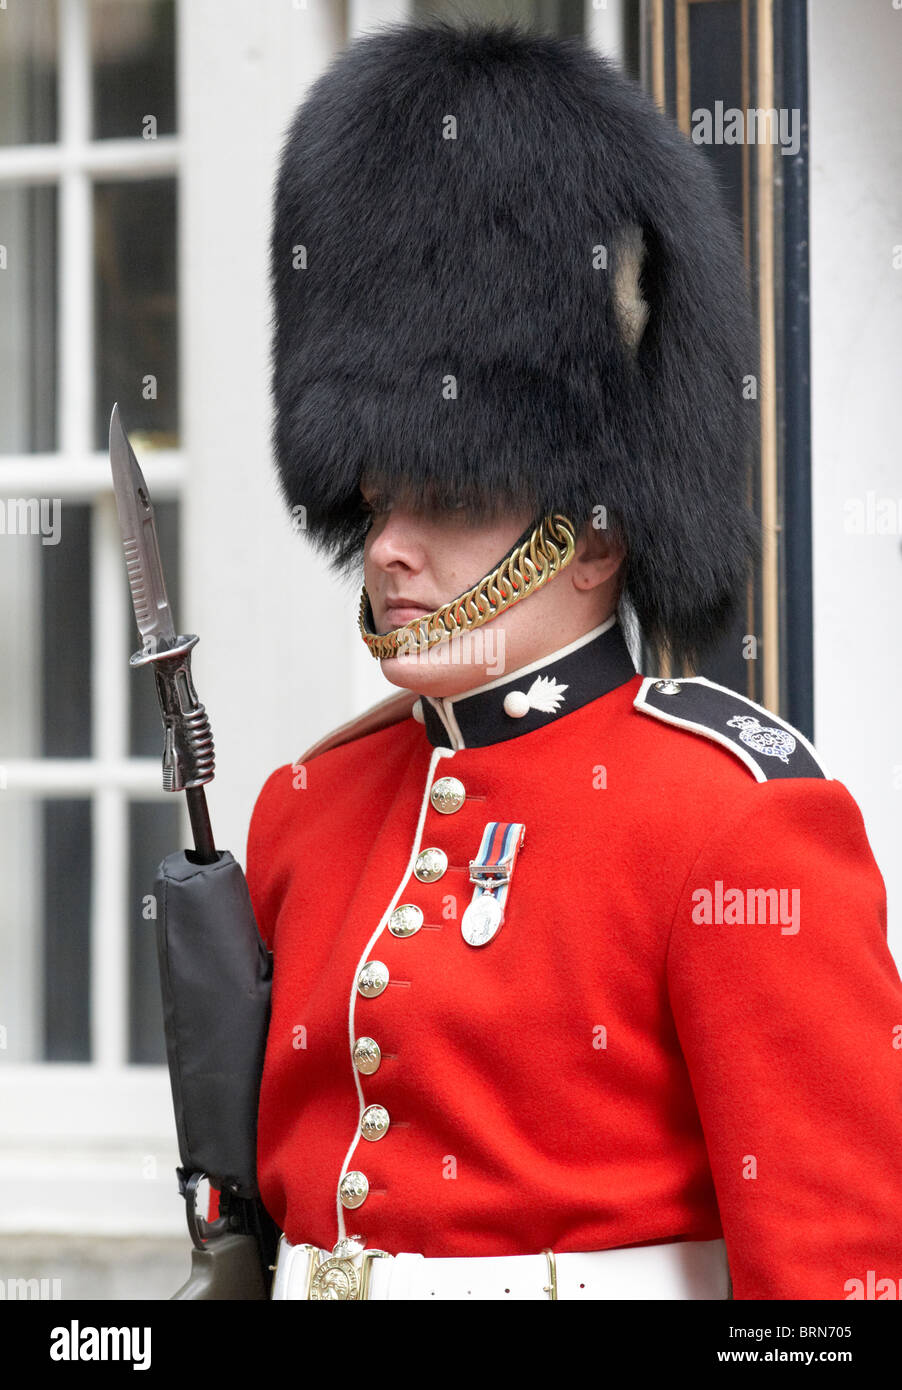 Guardia reale britannica immagini e fotografie stock ad alta risoluzione -  Alamy